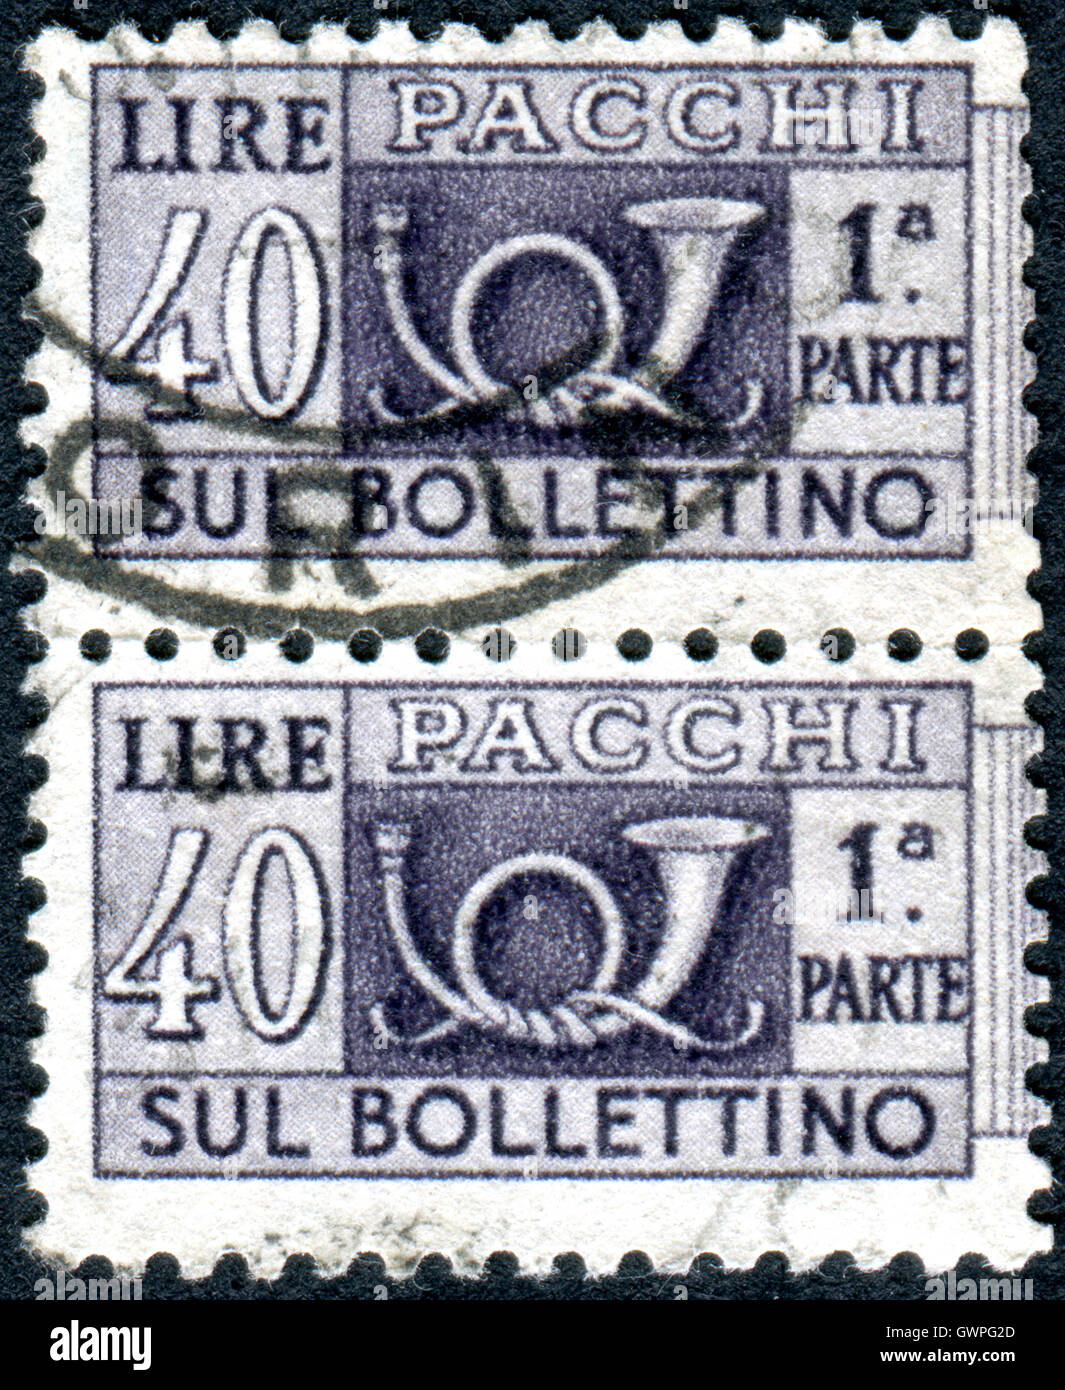 Italia - 1957 CIRCA: pacchi timbro stampato in Italia, mostra il tradizionale corno postale e il valore facciale, 1957 circa Foto Stock